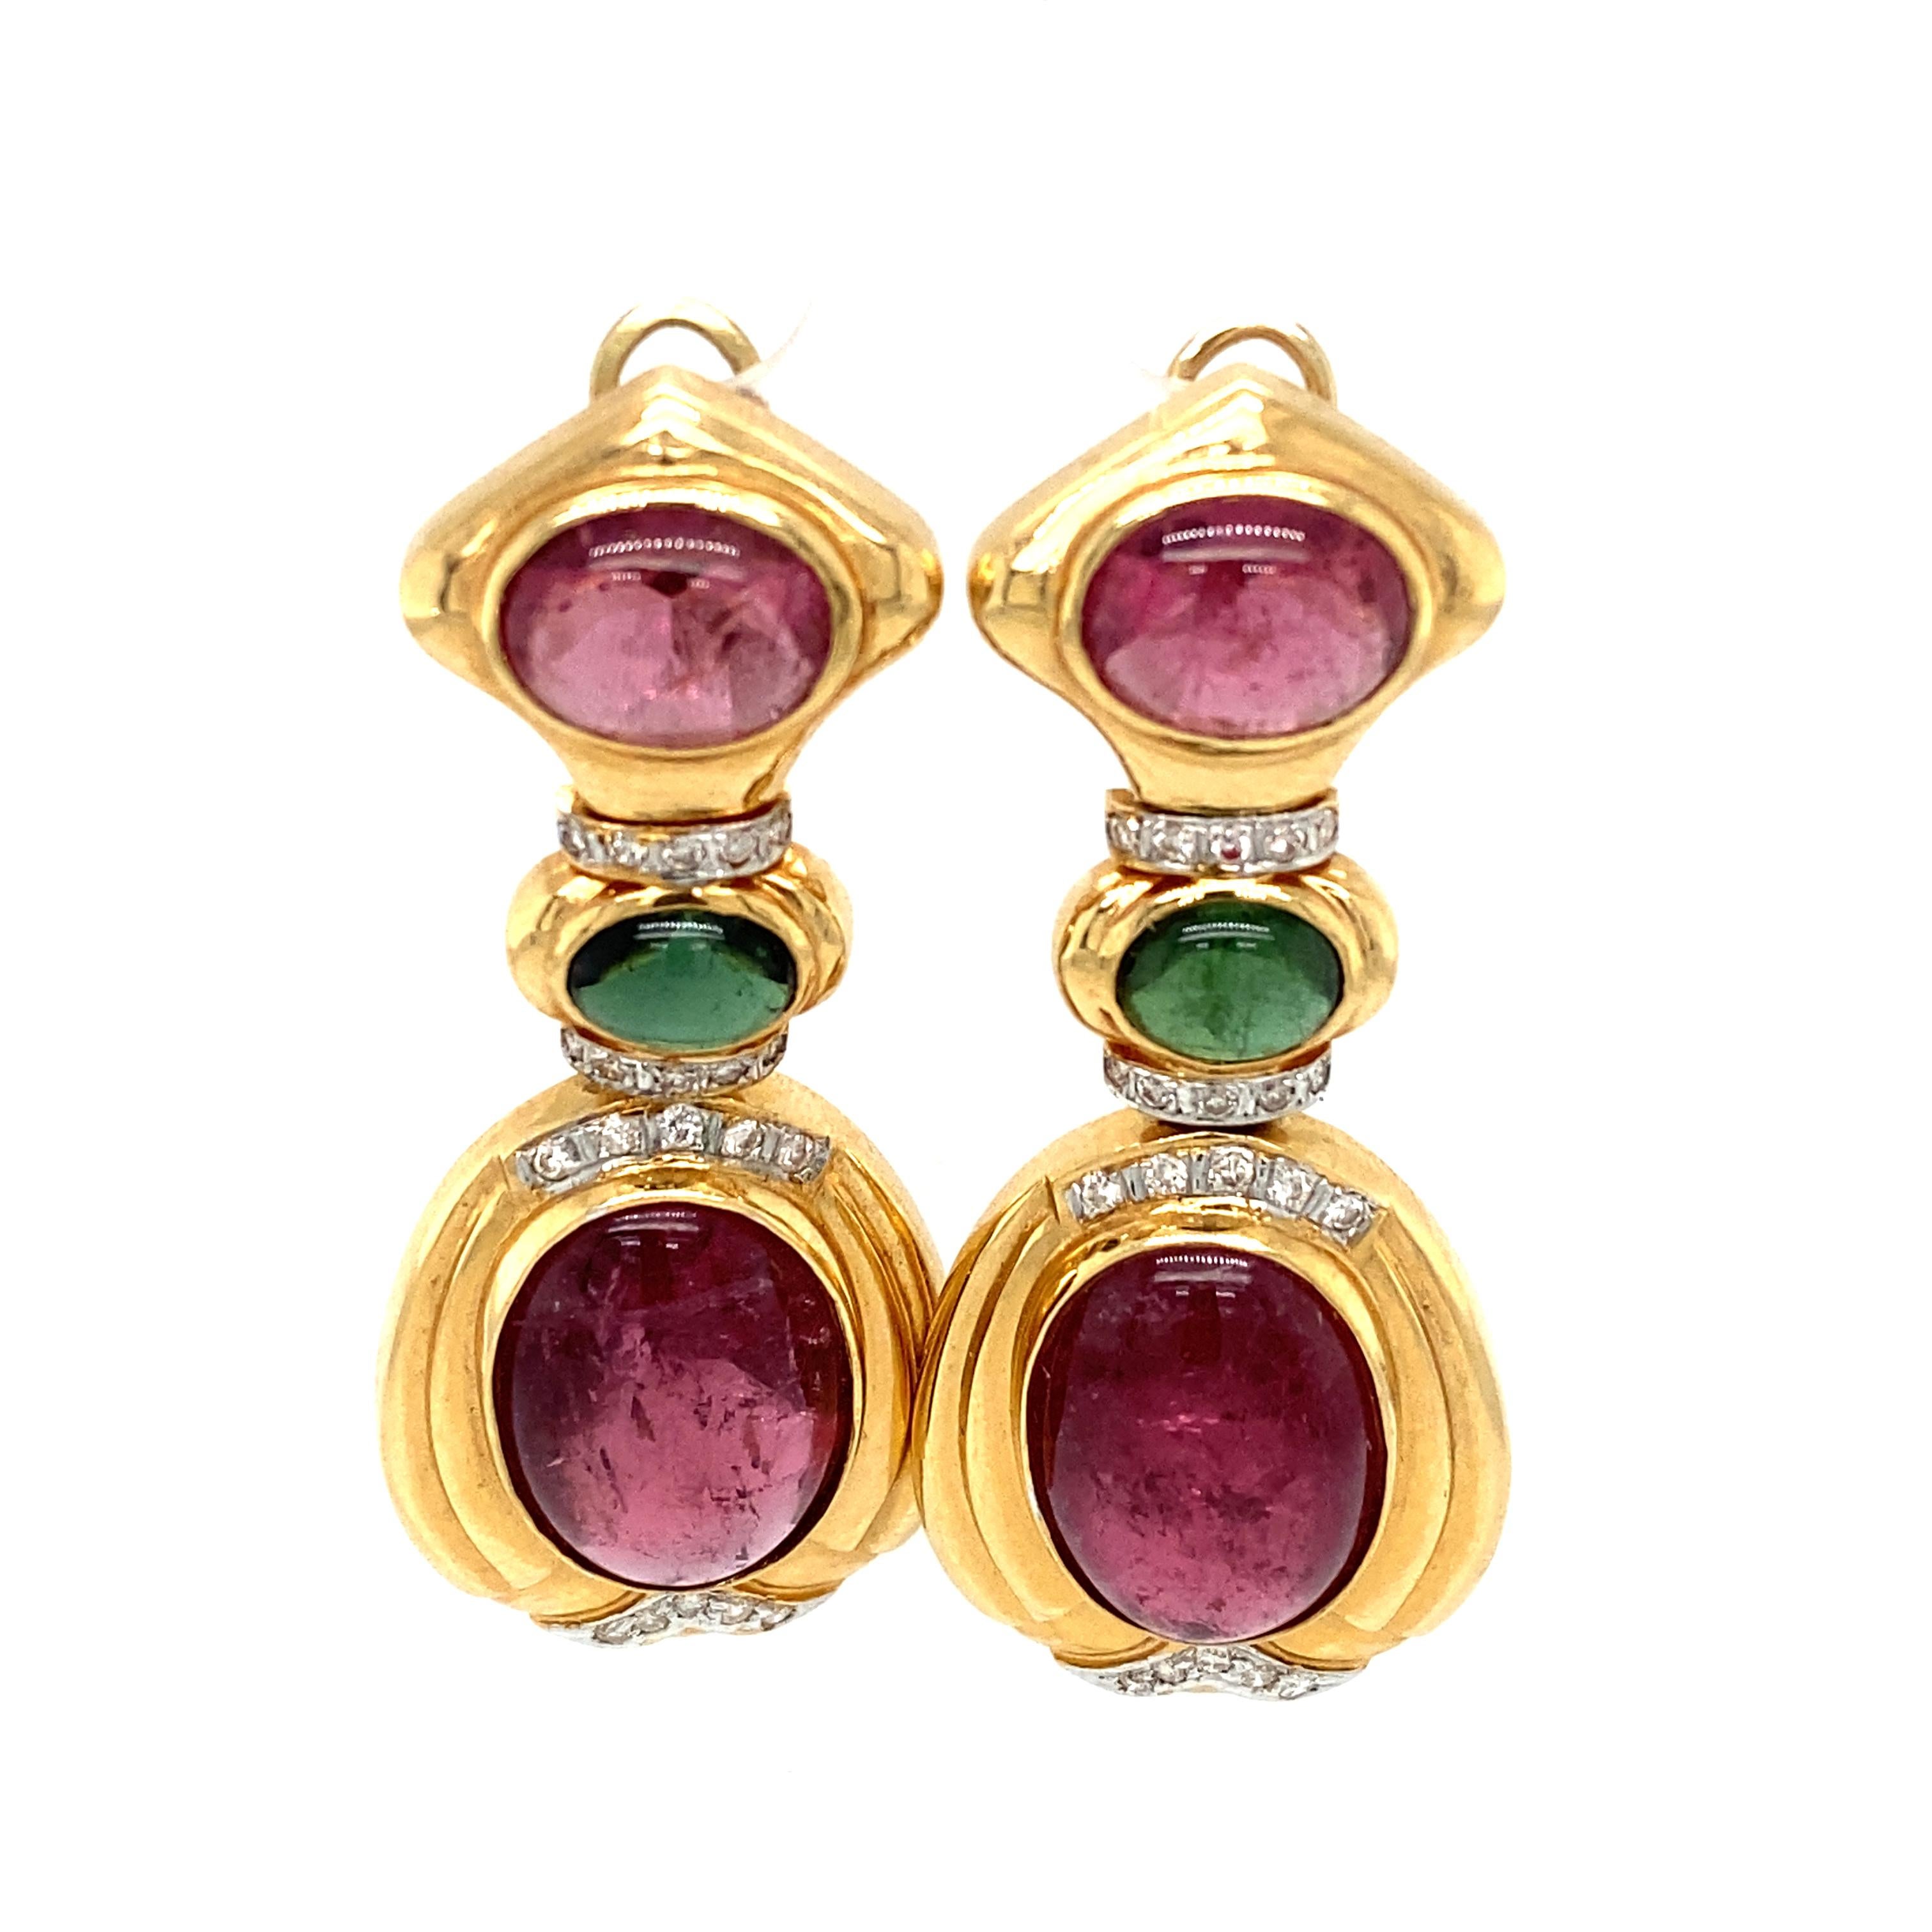 Artikel-Details: Diese Vintage-Ohrringe mit grünen und rosa Turmalin-Cabochons sind mit Diamanten besetzt. Sie sind perfekt als auffälliges Accessoire geeignet. Die Turmalinsteine haben eine ausgezeichnete Sättigung und einen schönen Kontrast und